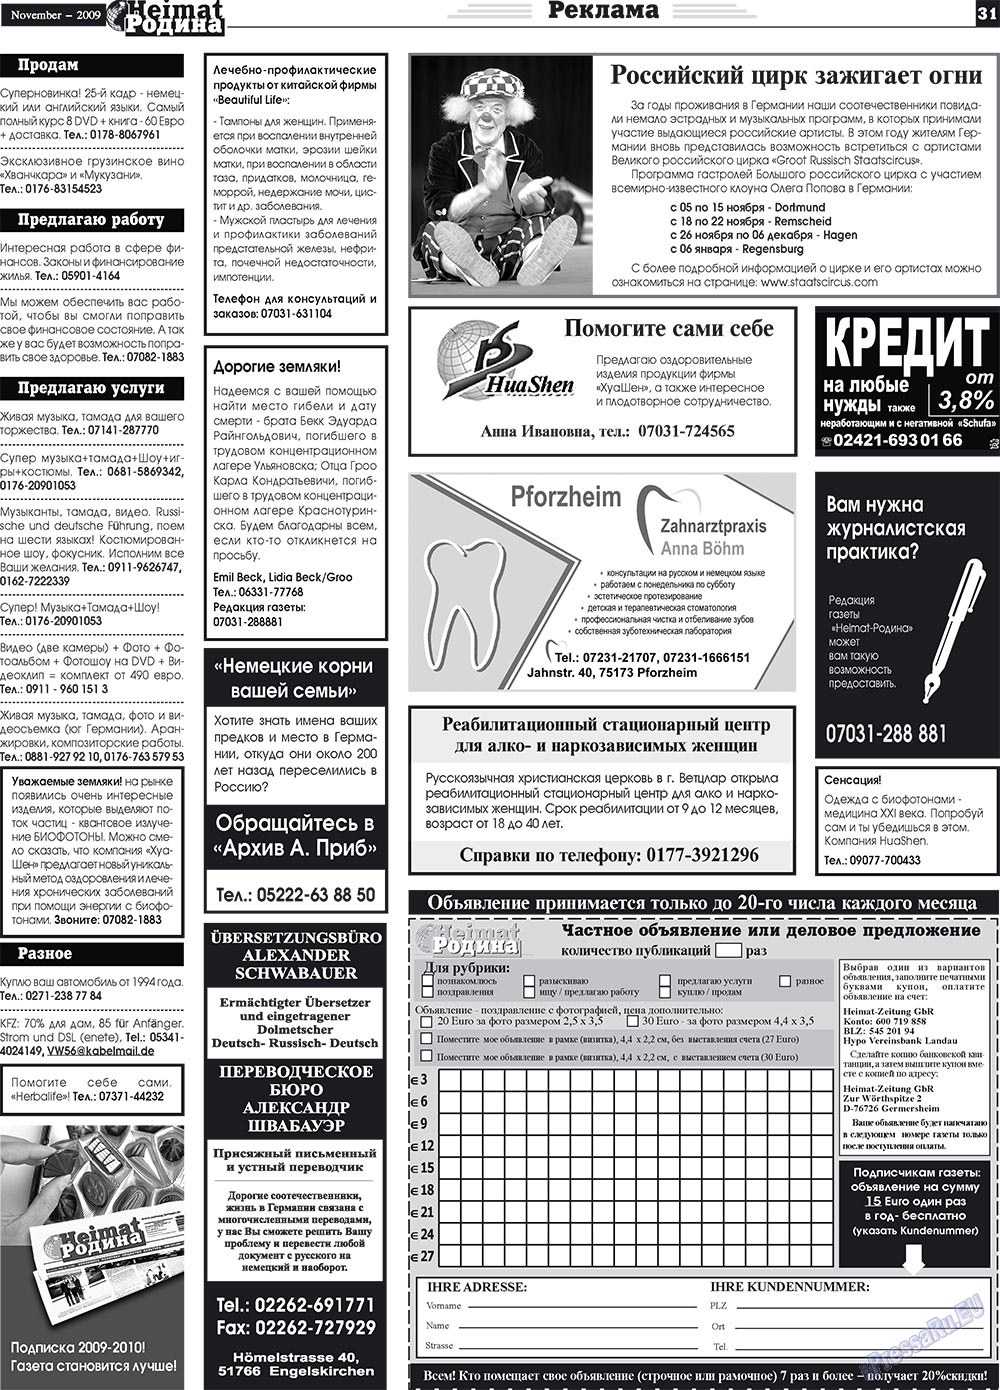 Heimat-Родина (газета). 2009 год, номер 11, стр. 31